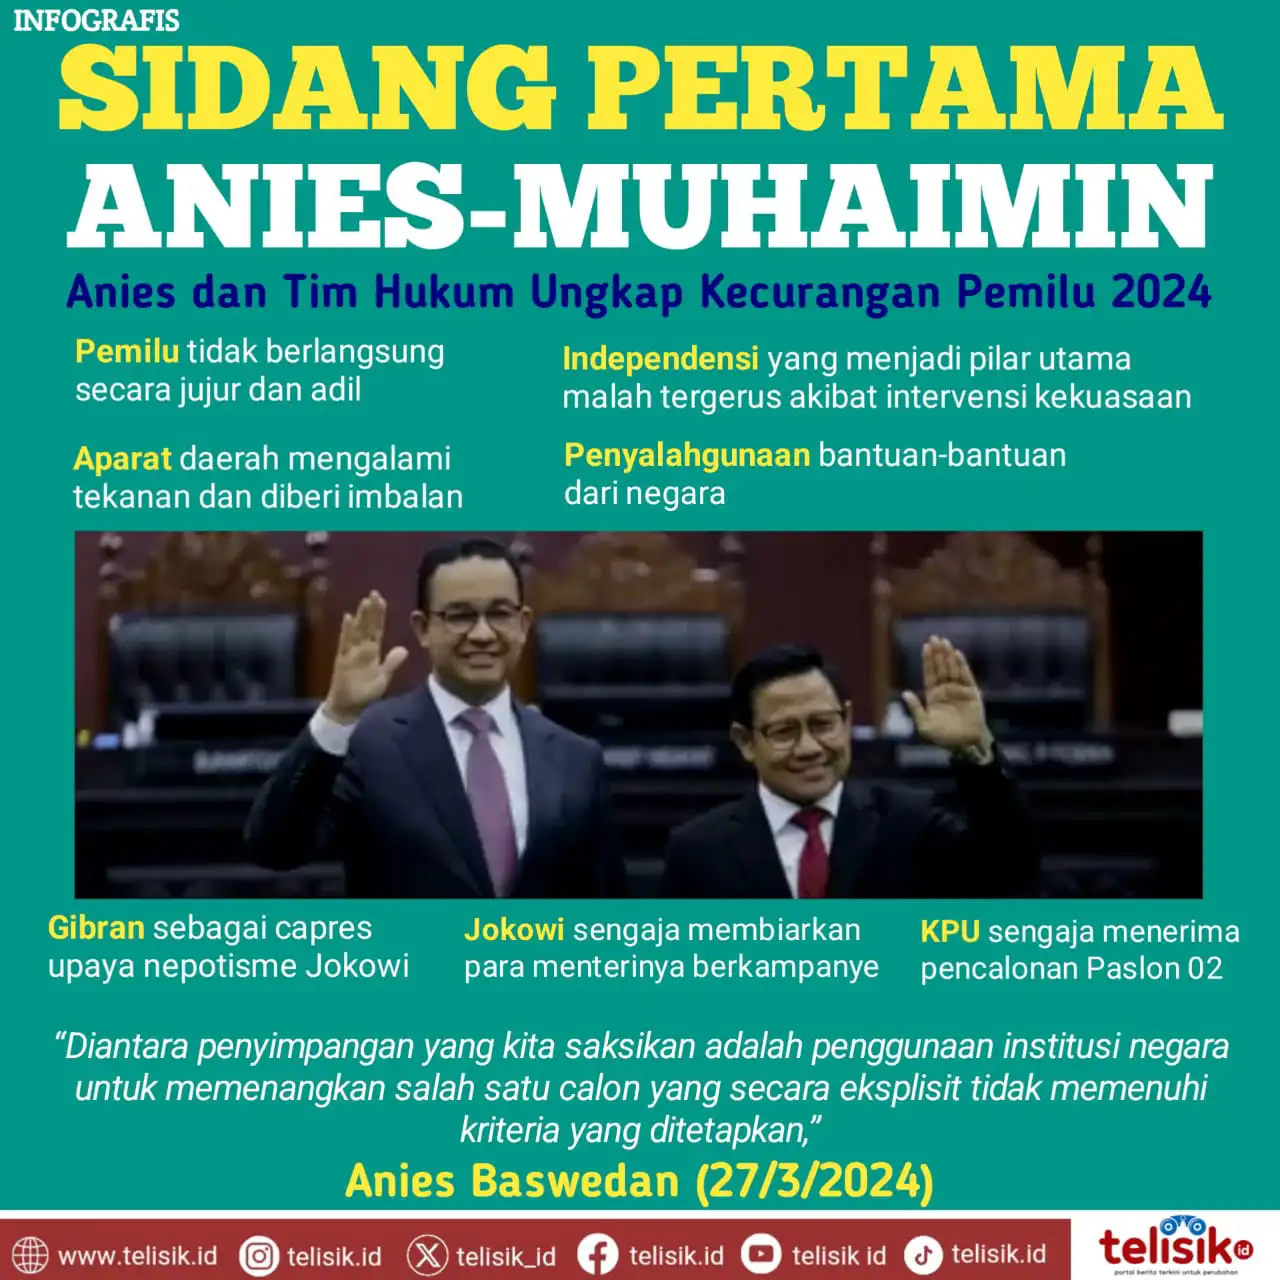 Infografis: Sidang Perdana Anies-Muhaimin, Ungkap Kecurangan Pemilu 2024